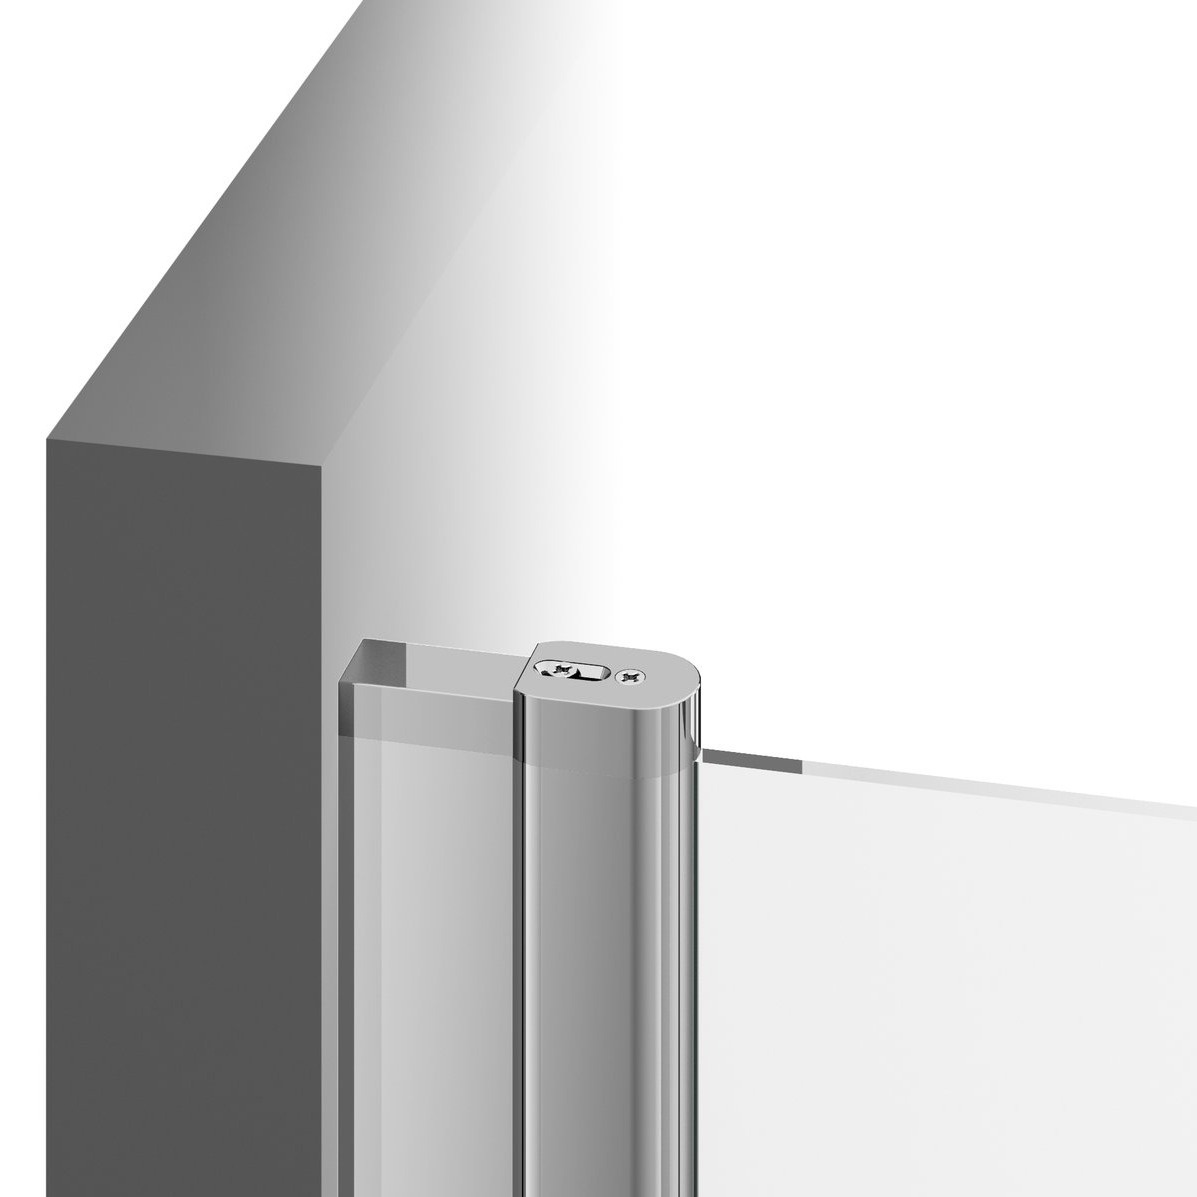 Двері скляні для душової ніші універсальні розпашні двосекційні RAVAK CHROME CSD2-120 195x120см прозоре скло 6мм профіль хром 0QVGCC00Z1